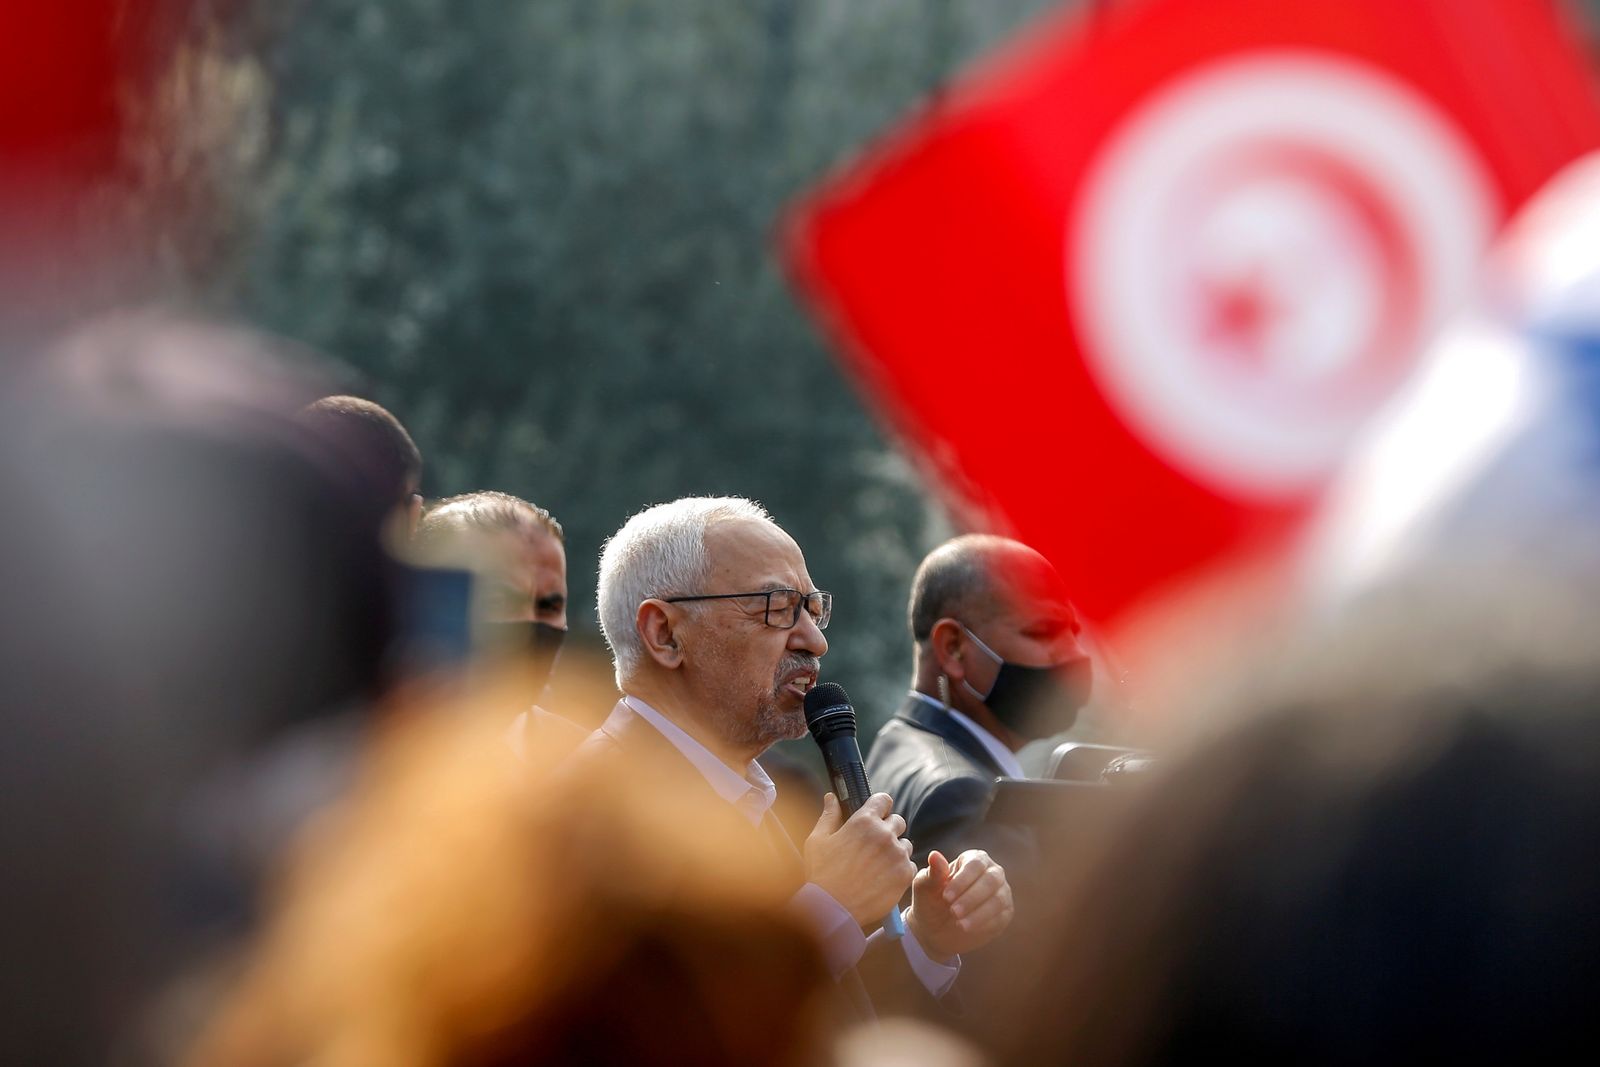 زعيم حركة النهضة التونسية راشد الغنوشي يتحدث إلى أنصاره خلال تجمع في العاصمة تونس- 27 فبراير 2021 - REUTERS